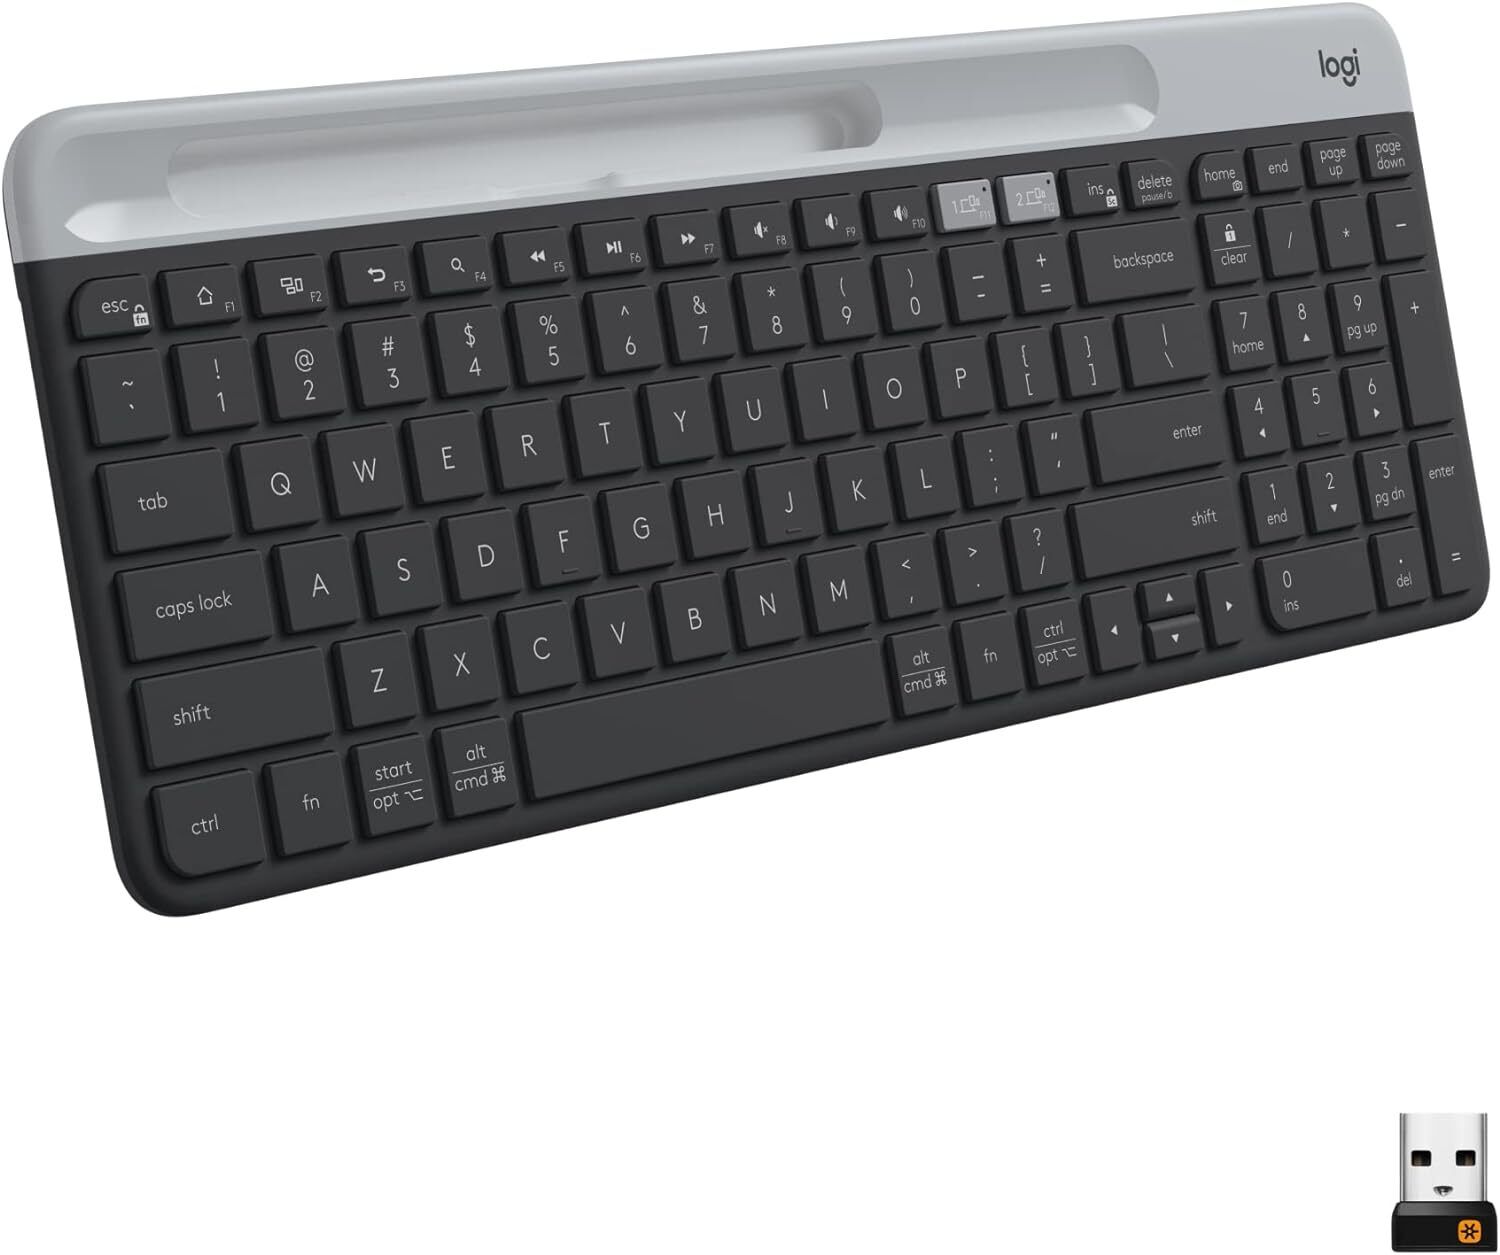 Logitech K585 Multi-Device Slim Wireless Keyboard, Built-in Cradle - Graphite